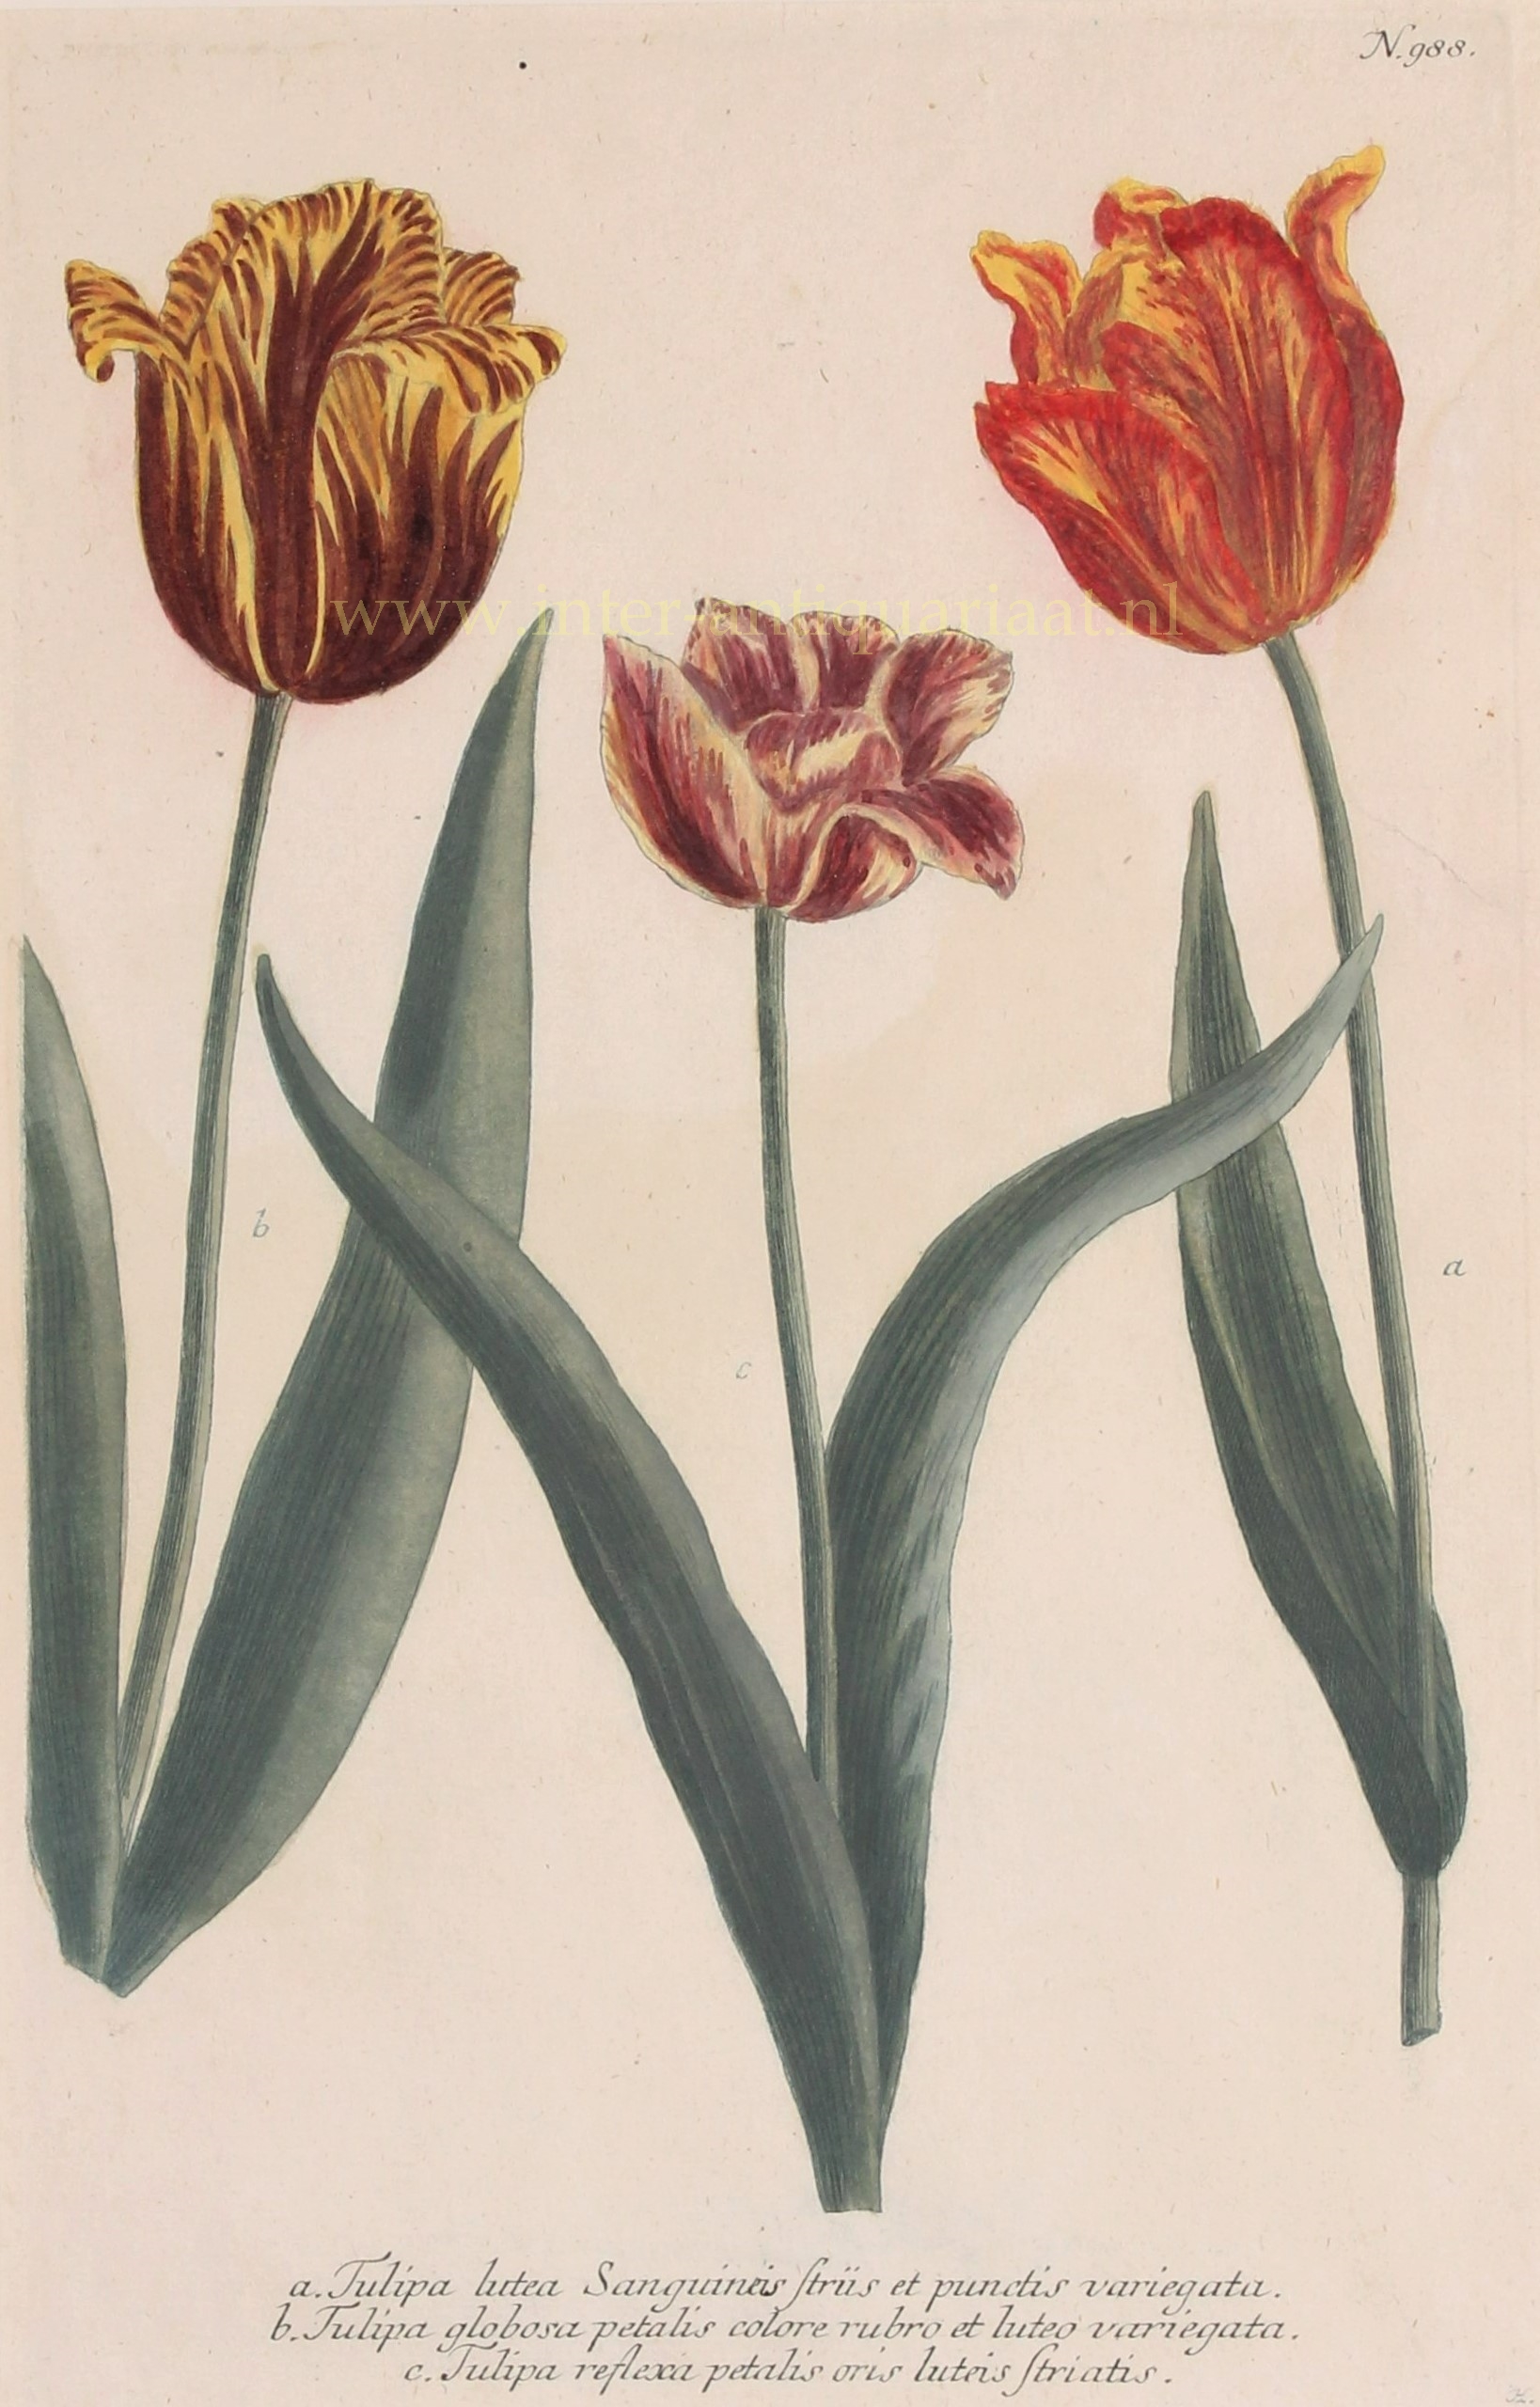 Weinmann-- Johann Wilhelm (1683-1741) - Tulips - Johann Wilhelm Weinmann, 1737-1745